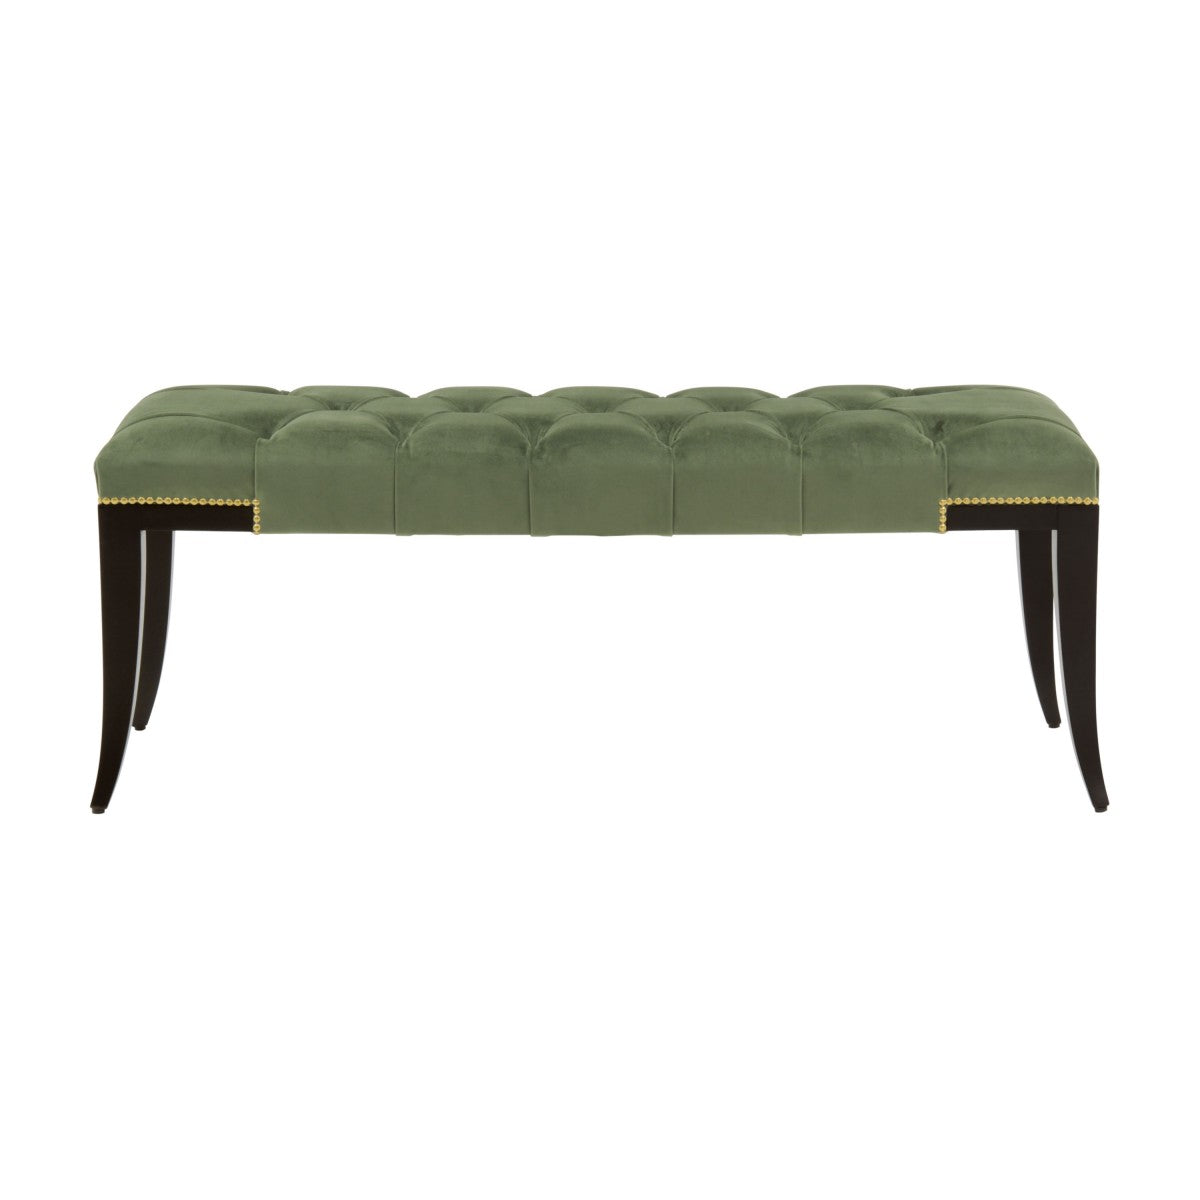 Idra Bespoke Upholstered Elegant Modern Design Style Bench MS193Q Custom Made To Order